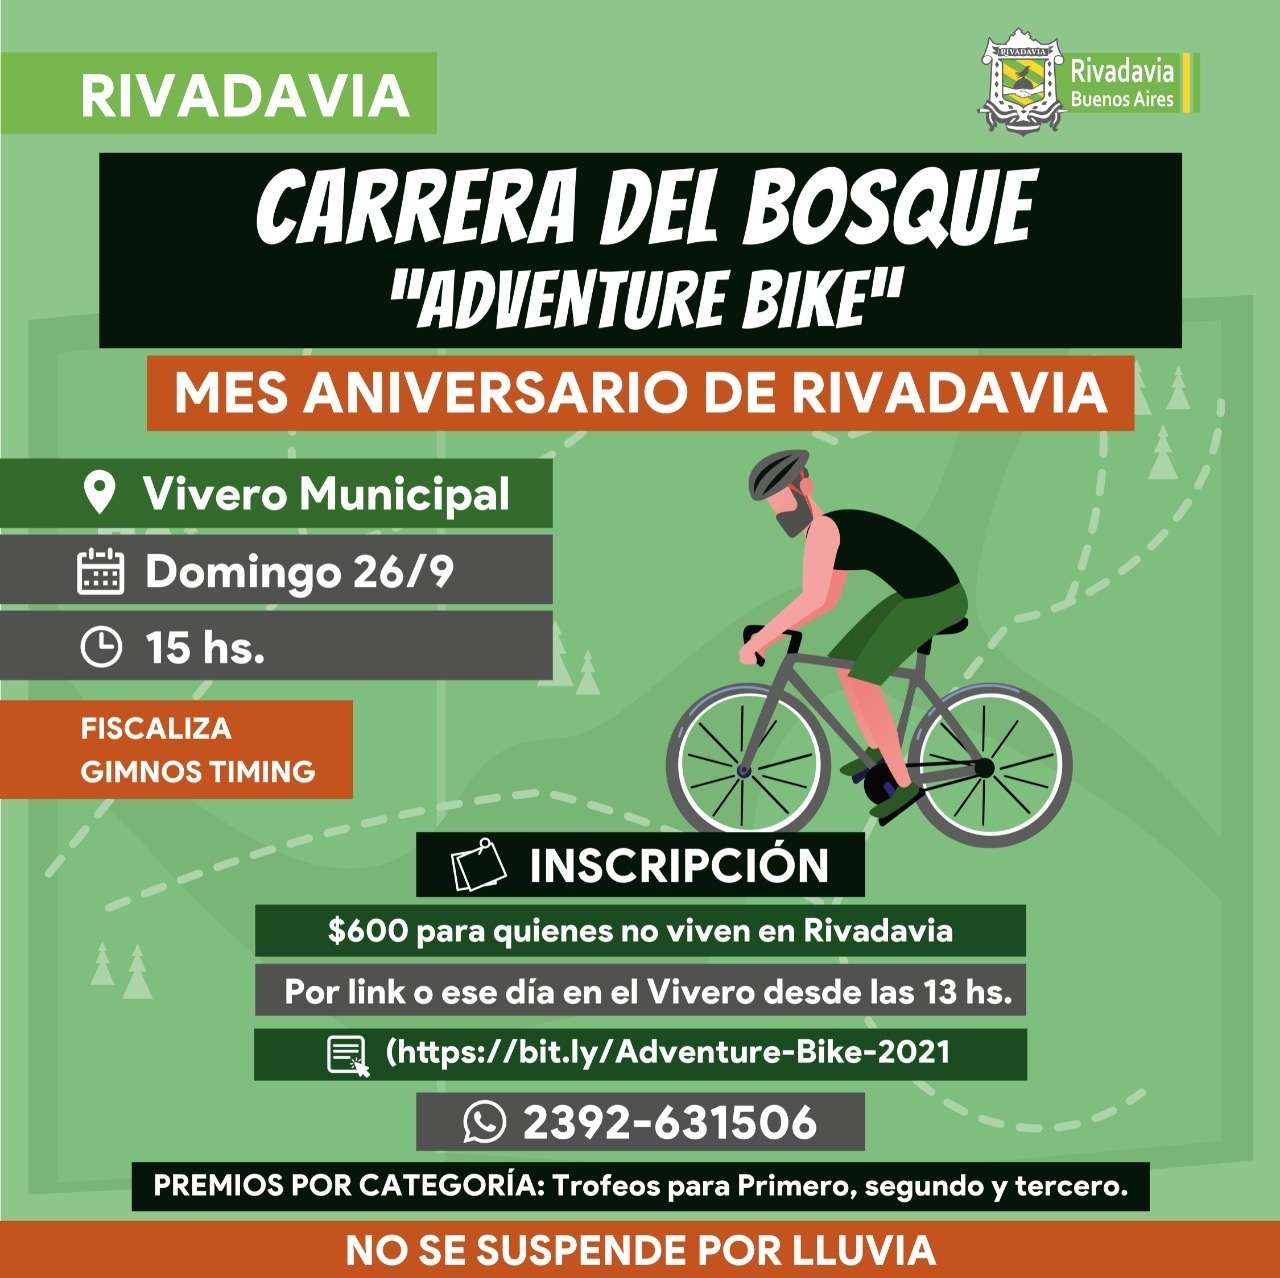 Rivadavia organiza eventos deportivos para celebrar el aniversario